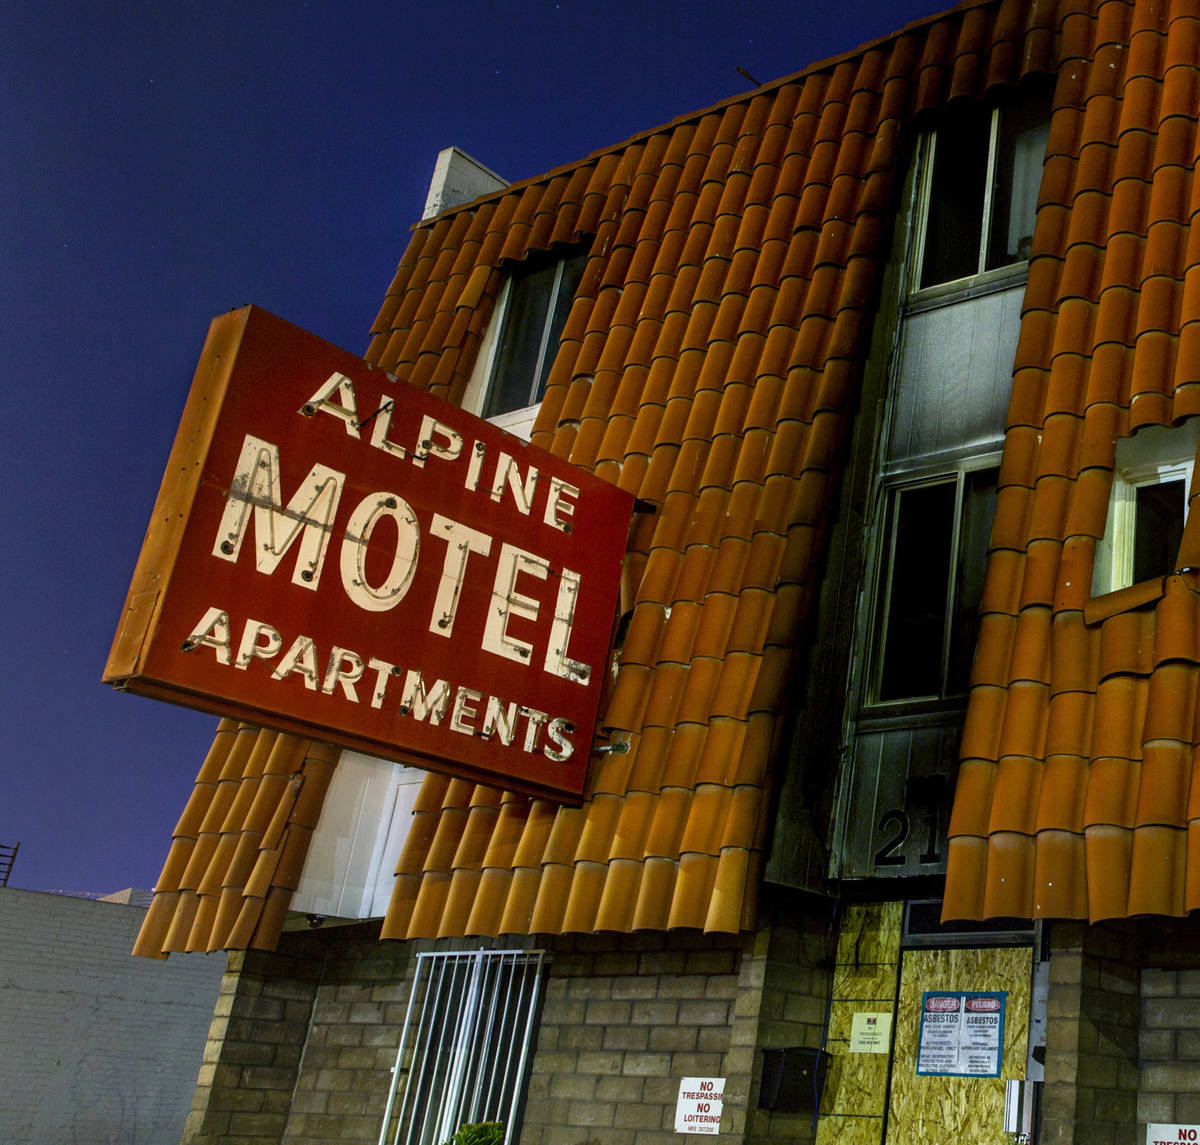 El exterior de los apartamentos del Motel Alpine el miércoles, 12 de febrero de 2020, en Las V ...